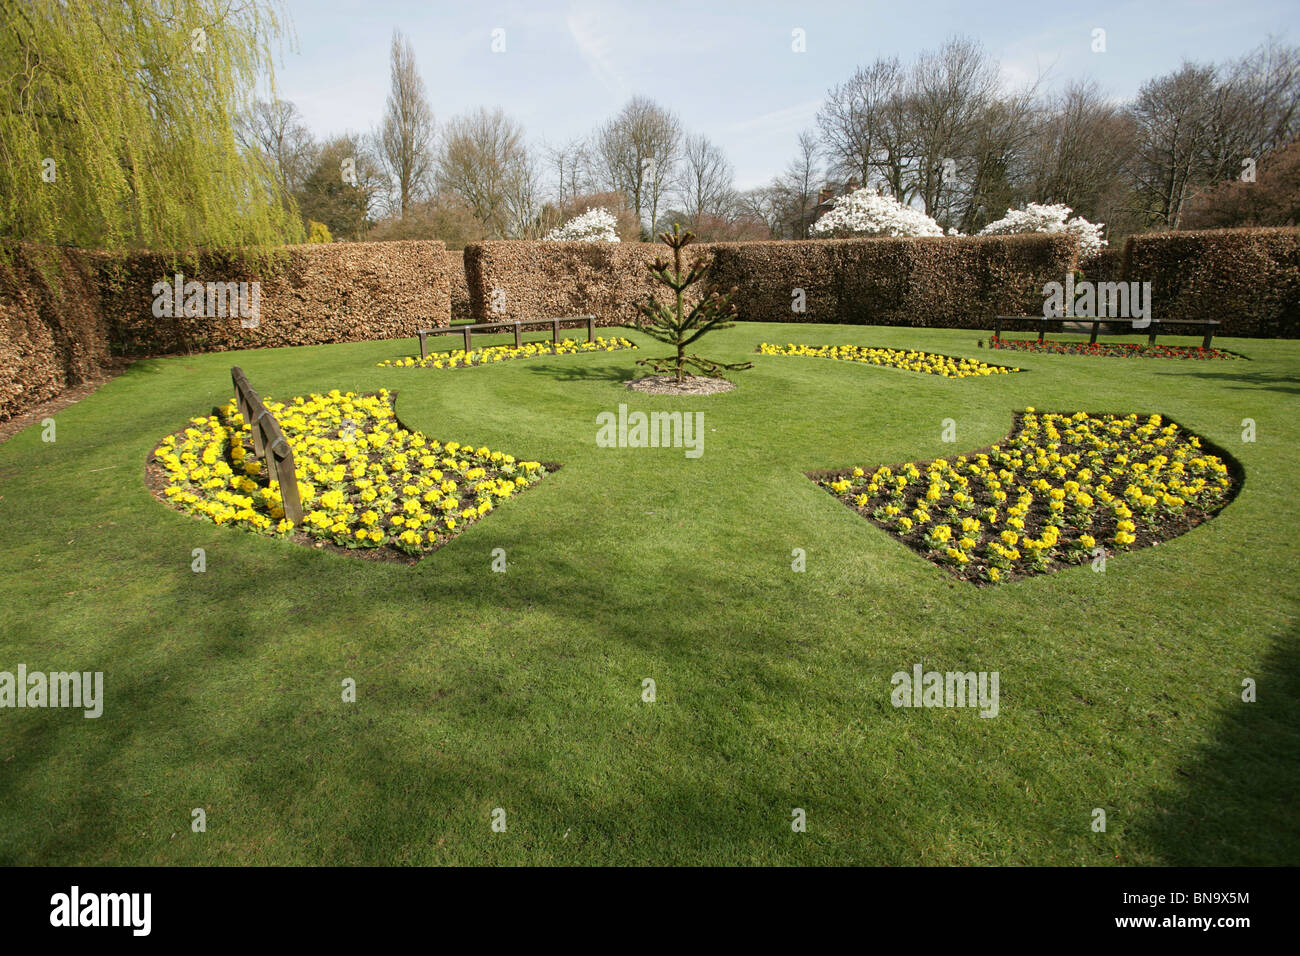 Walkden Gardens, Sale, England. Yellow primulas in spring flower beds in the Memories Garden of Walkden Gardens. Stock Photo